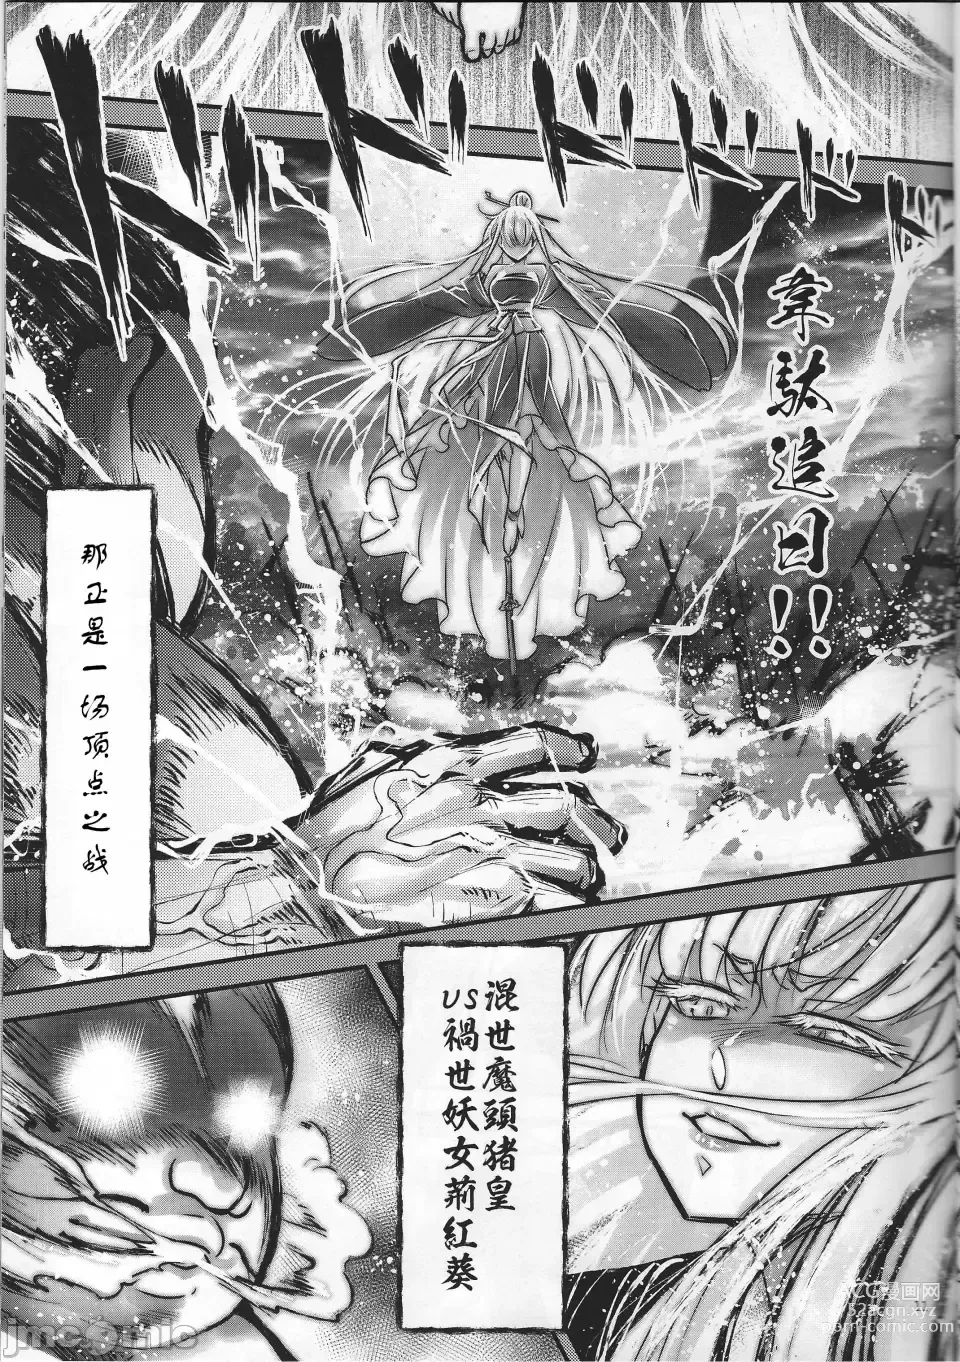 Page 12 of doujinshi Hyakkasou 12 <<Jitsuroku Makyou Hyakkasou Kikou>>